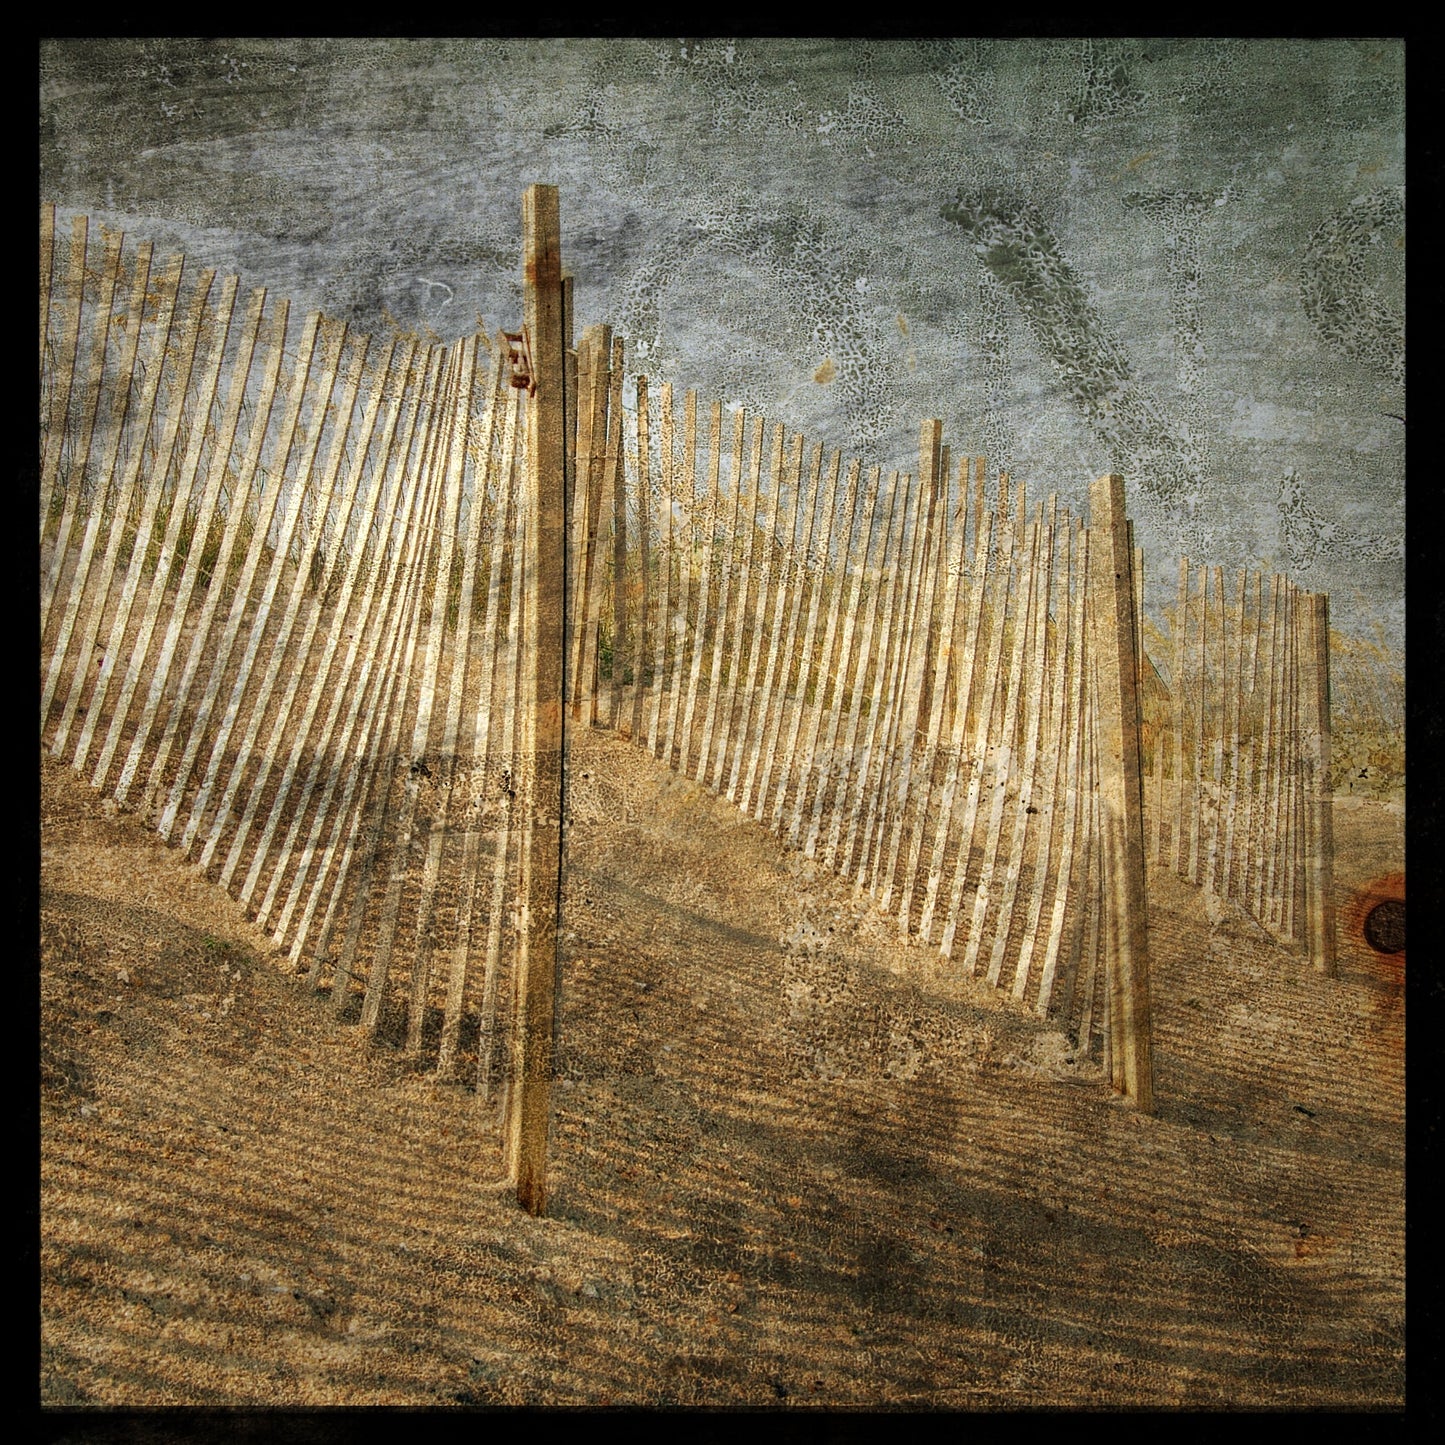 Fences Photograph